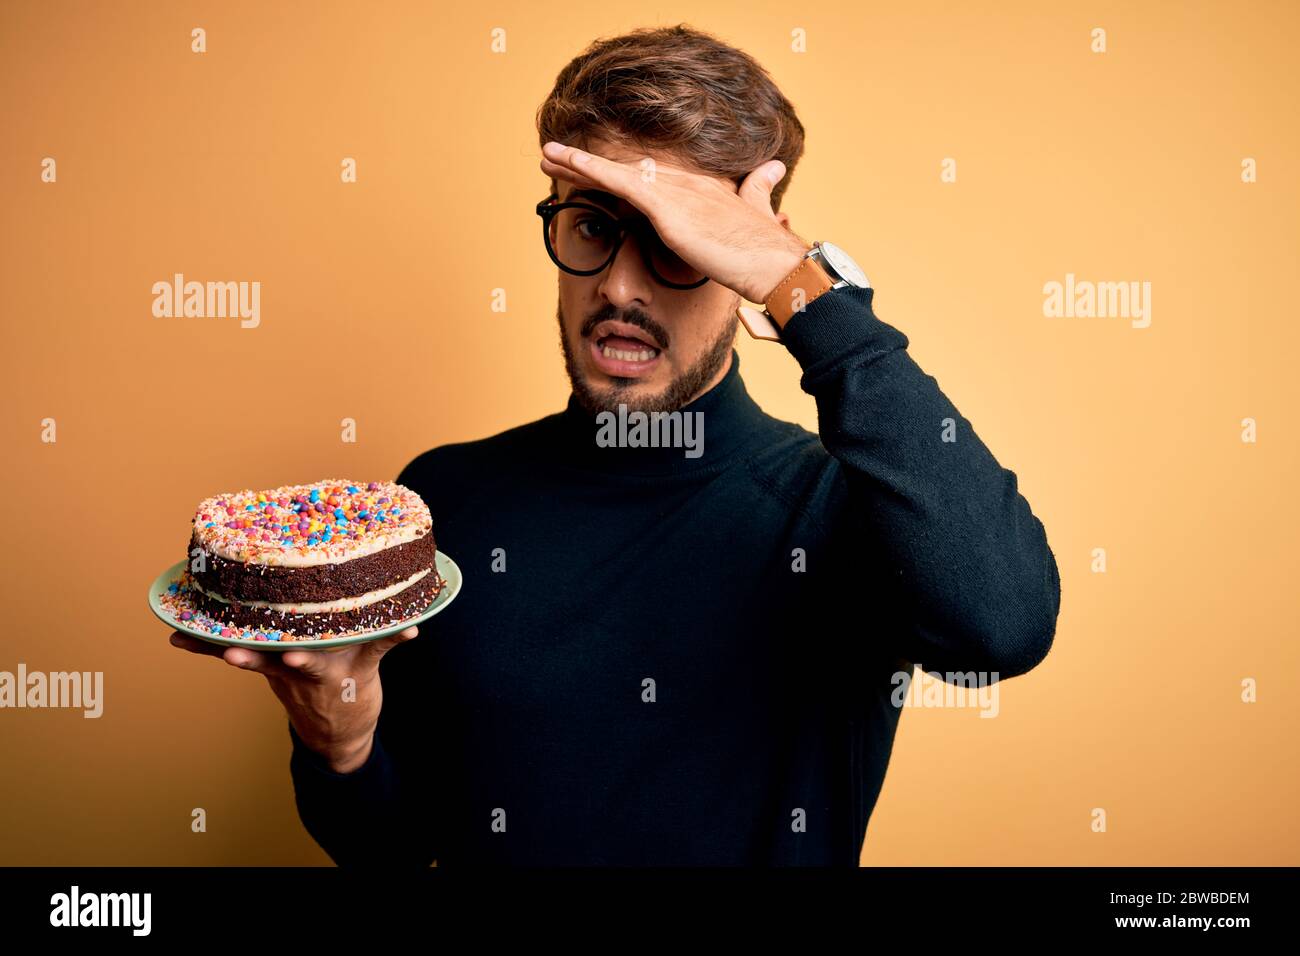 11 Best Beard cake ideas | beard cake, cake, birthday cakes for men